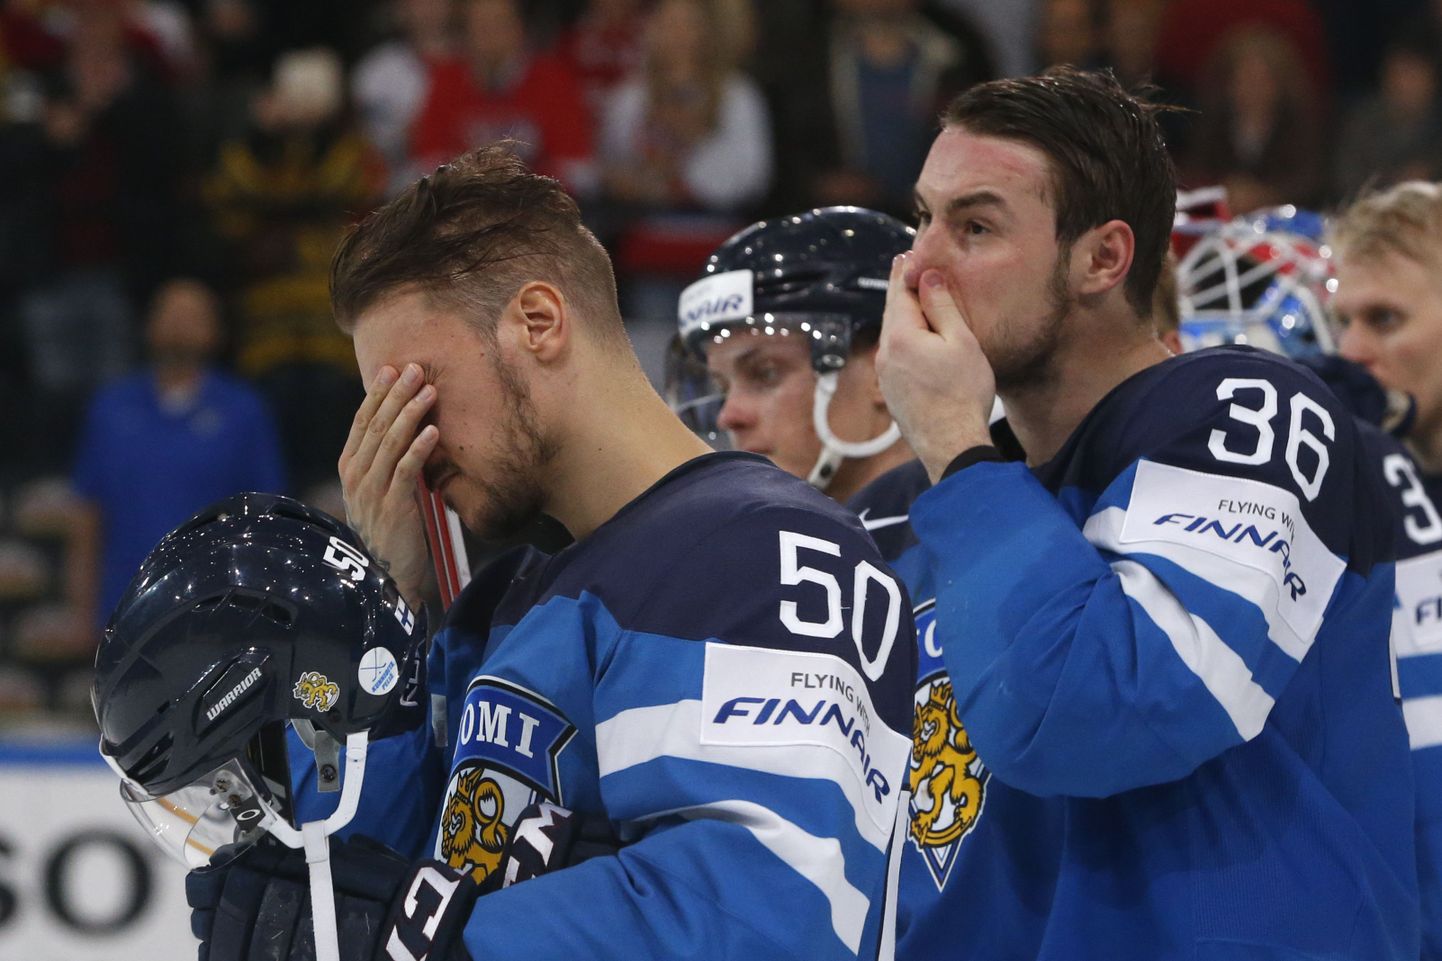 Soome jäähokikoondis pole MMil pidanud kunagi veerandfinaale kõrvalt vaatama. Tänavu on oht sääraseks stsenaariumiks igati reaalne.